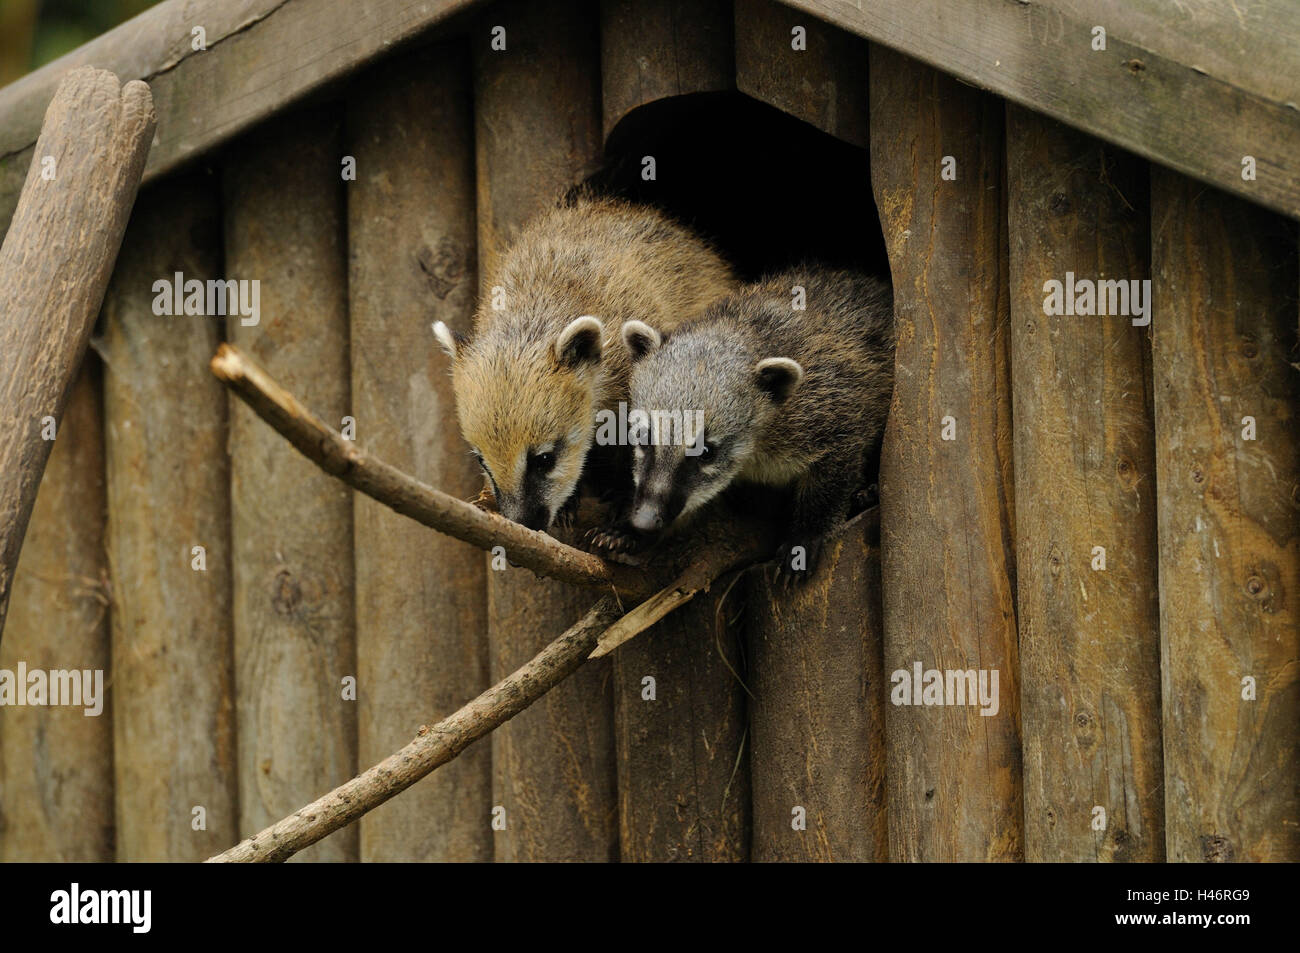 South American coatis, Nasua nasua, young animals, Stock Photo